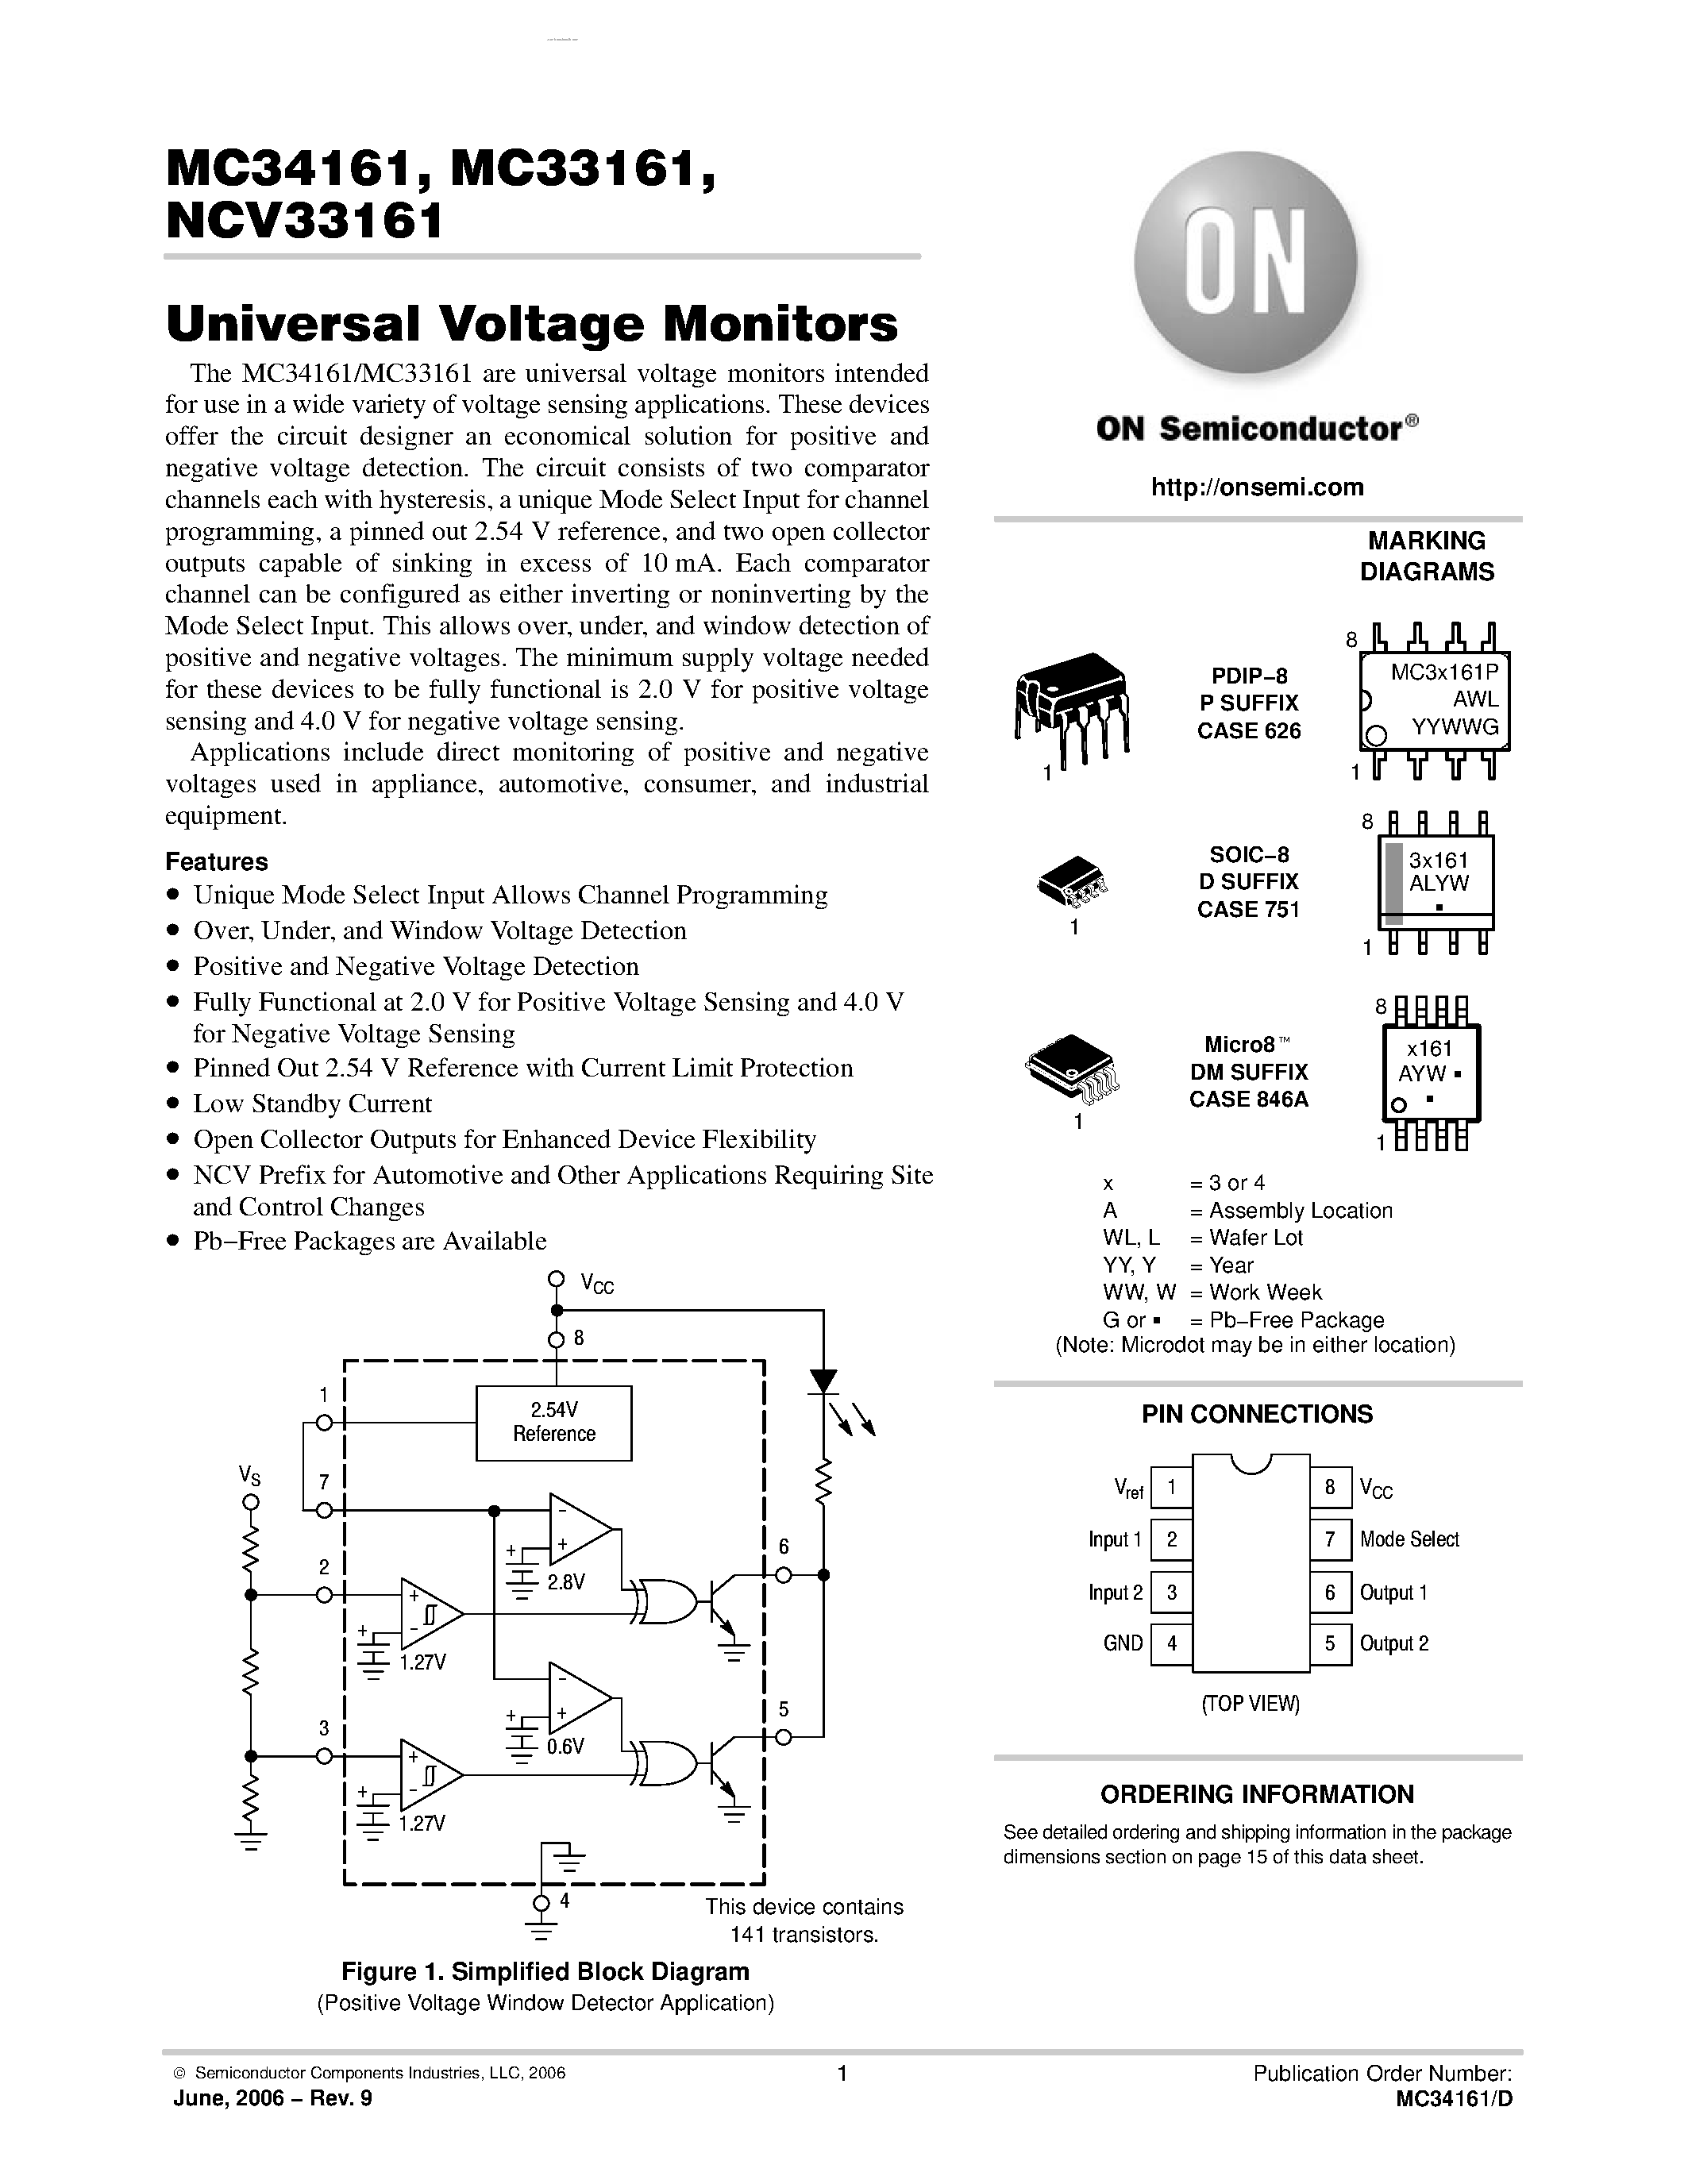 Даташит MC33161 - (MC33161 / MC34161) Universal Voltage Monitors страница 1